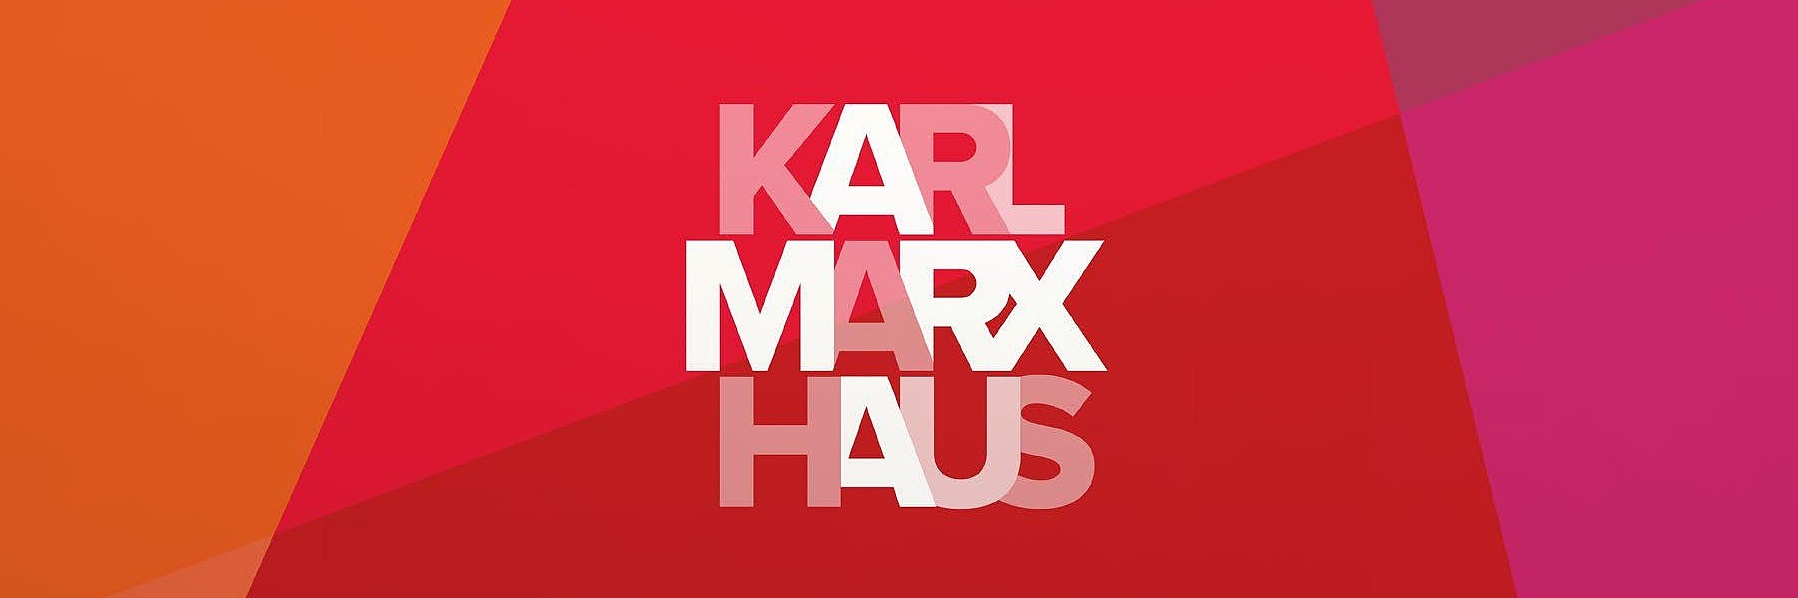 Ein Bildausschnitt des offiziellen Logos des Museum Karl-Marx-Haus. Im Hintergrund sind verschiedene Farbfelder entsprechend des Corporate Designs zu sehen.